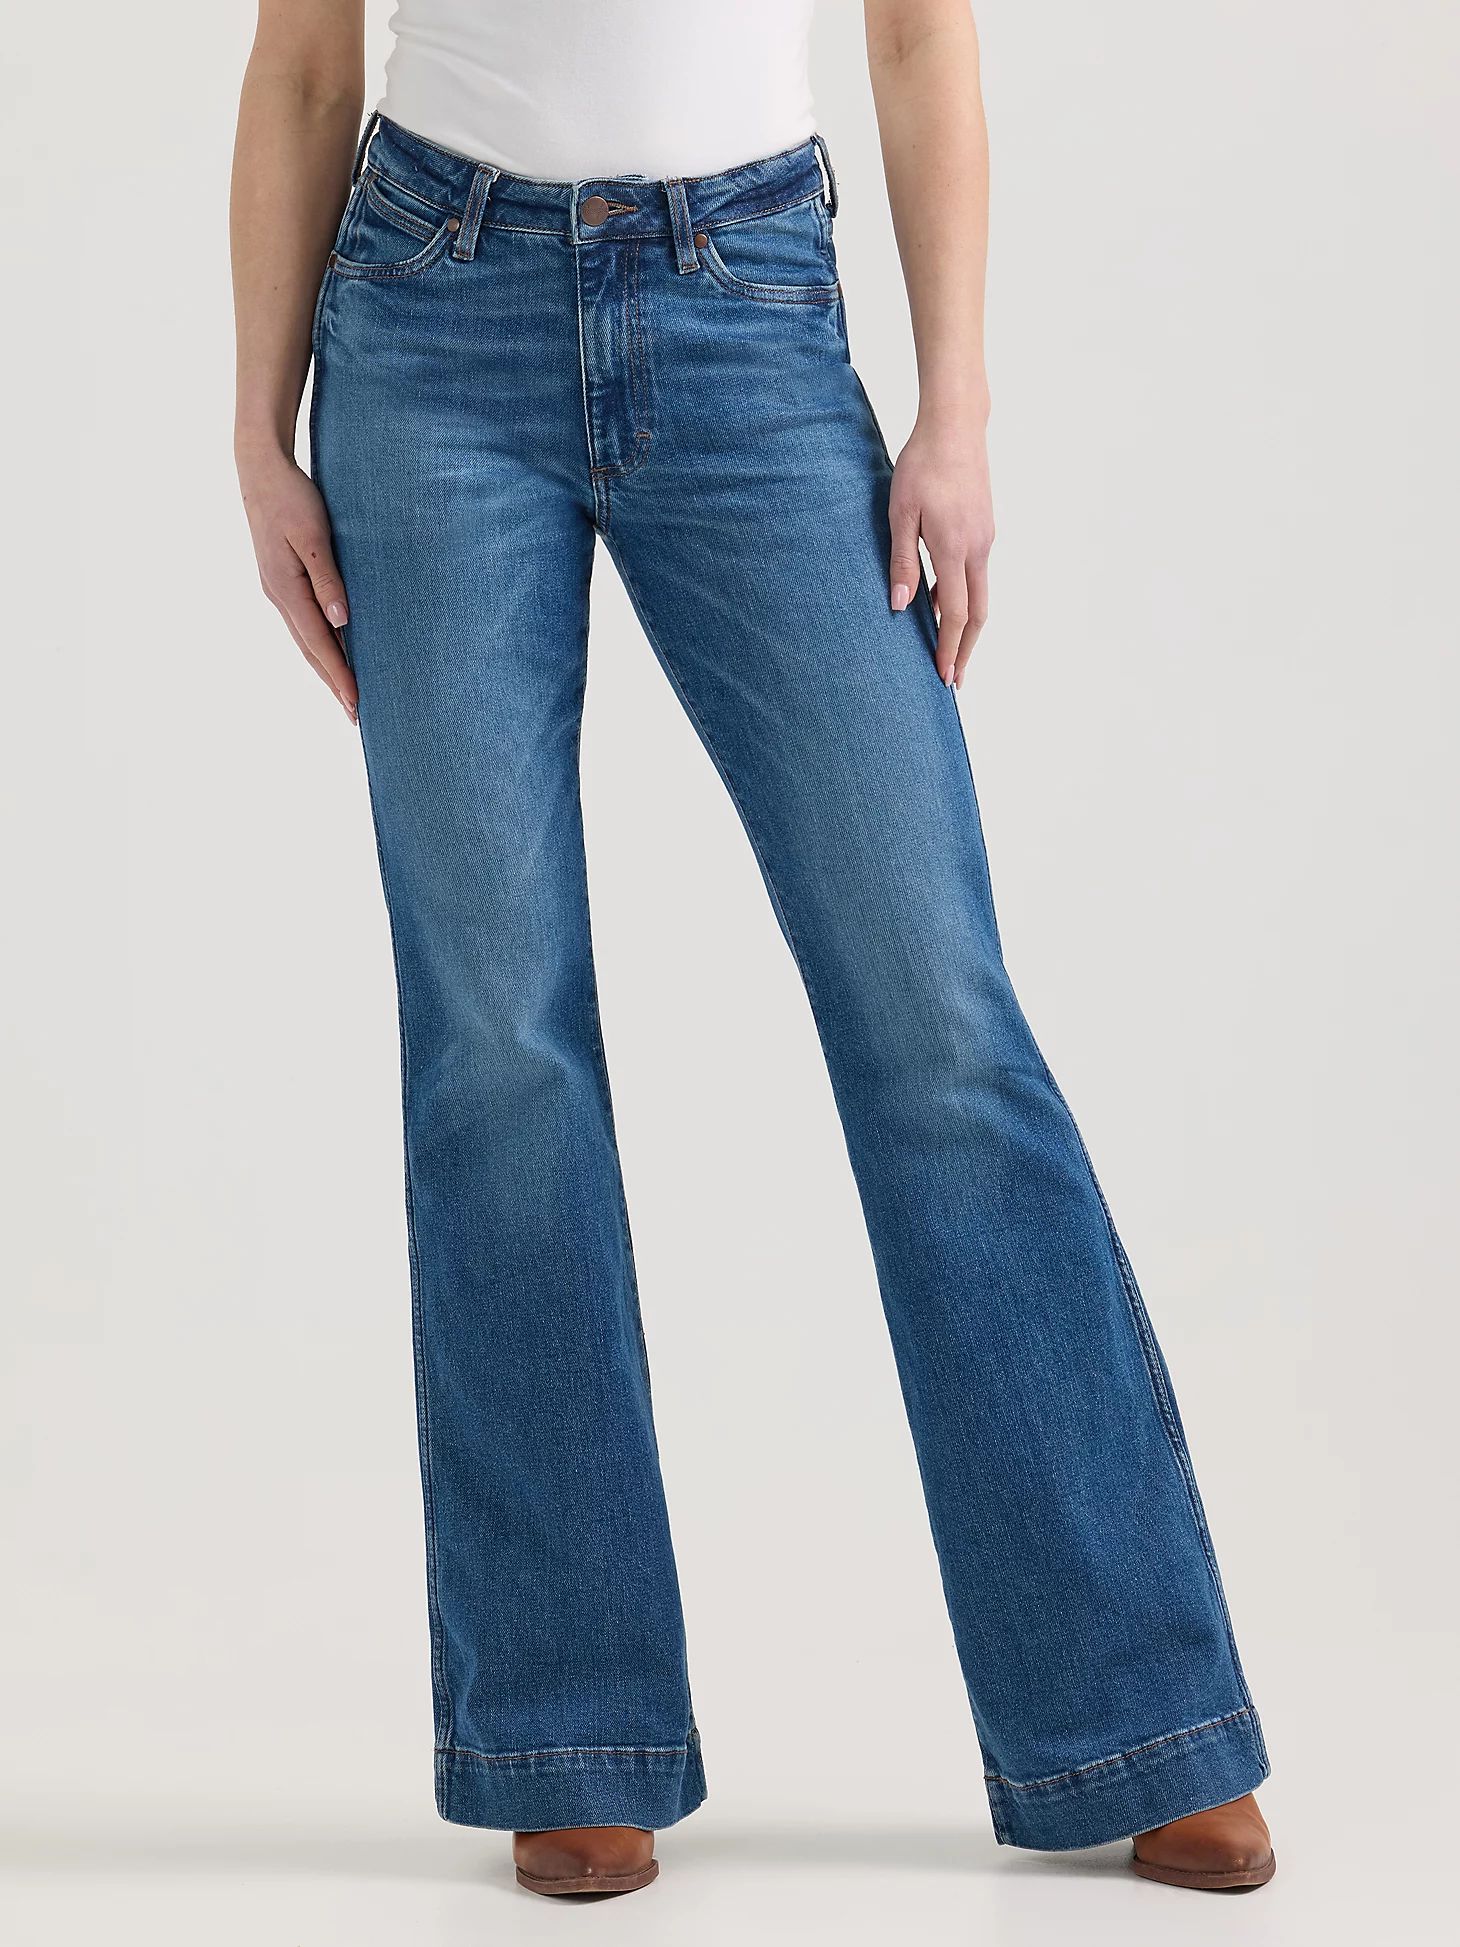 Women's Wrangler Retro® Bailey High Rise Trouser Jean in Bessie | Wrangler